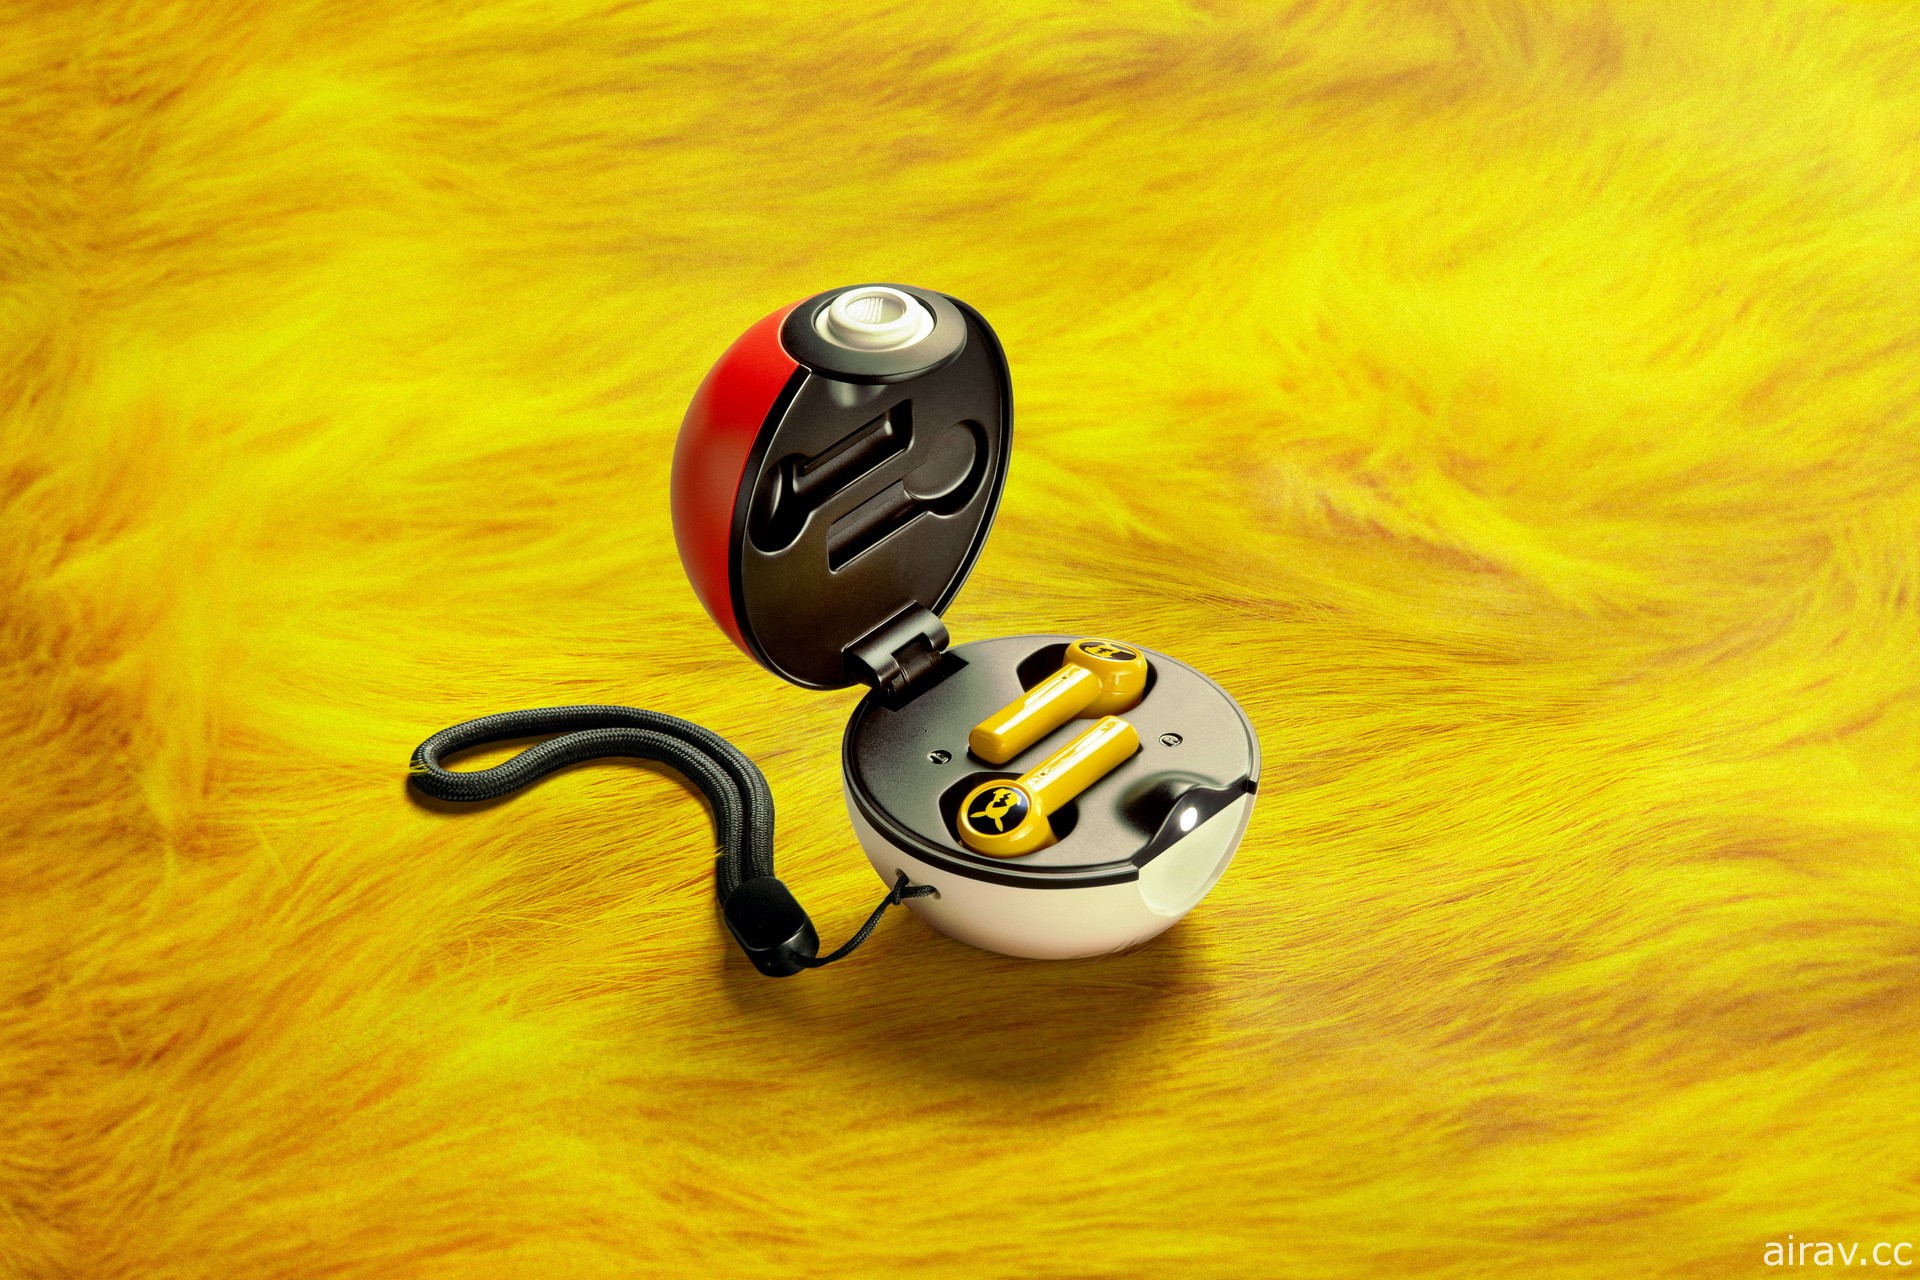 Razer 與《寶可夢》皮卡丘聯名鍵鼠、耳機限定款在台上市 精靈球充電盒內建招牌音效